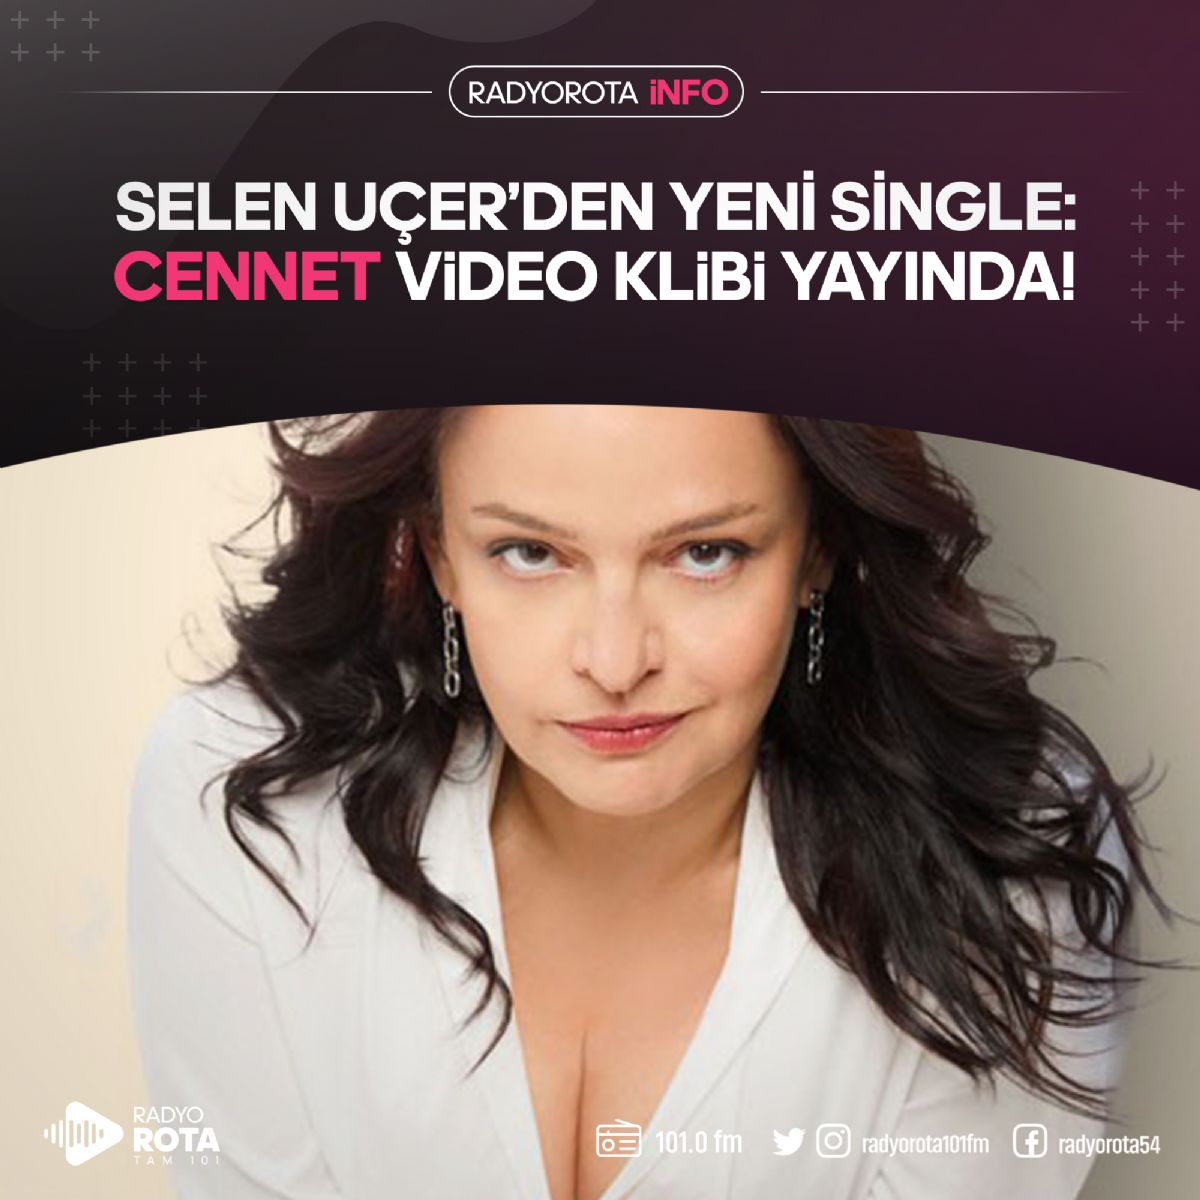 Selen Uer'den Yeni Single 'CENNET'